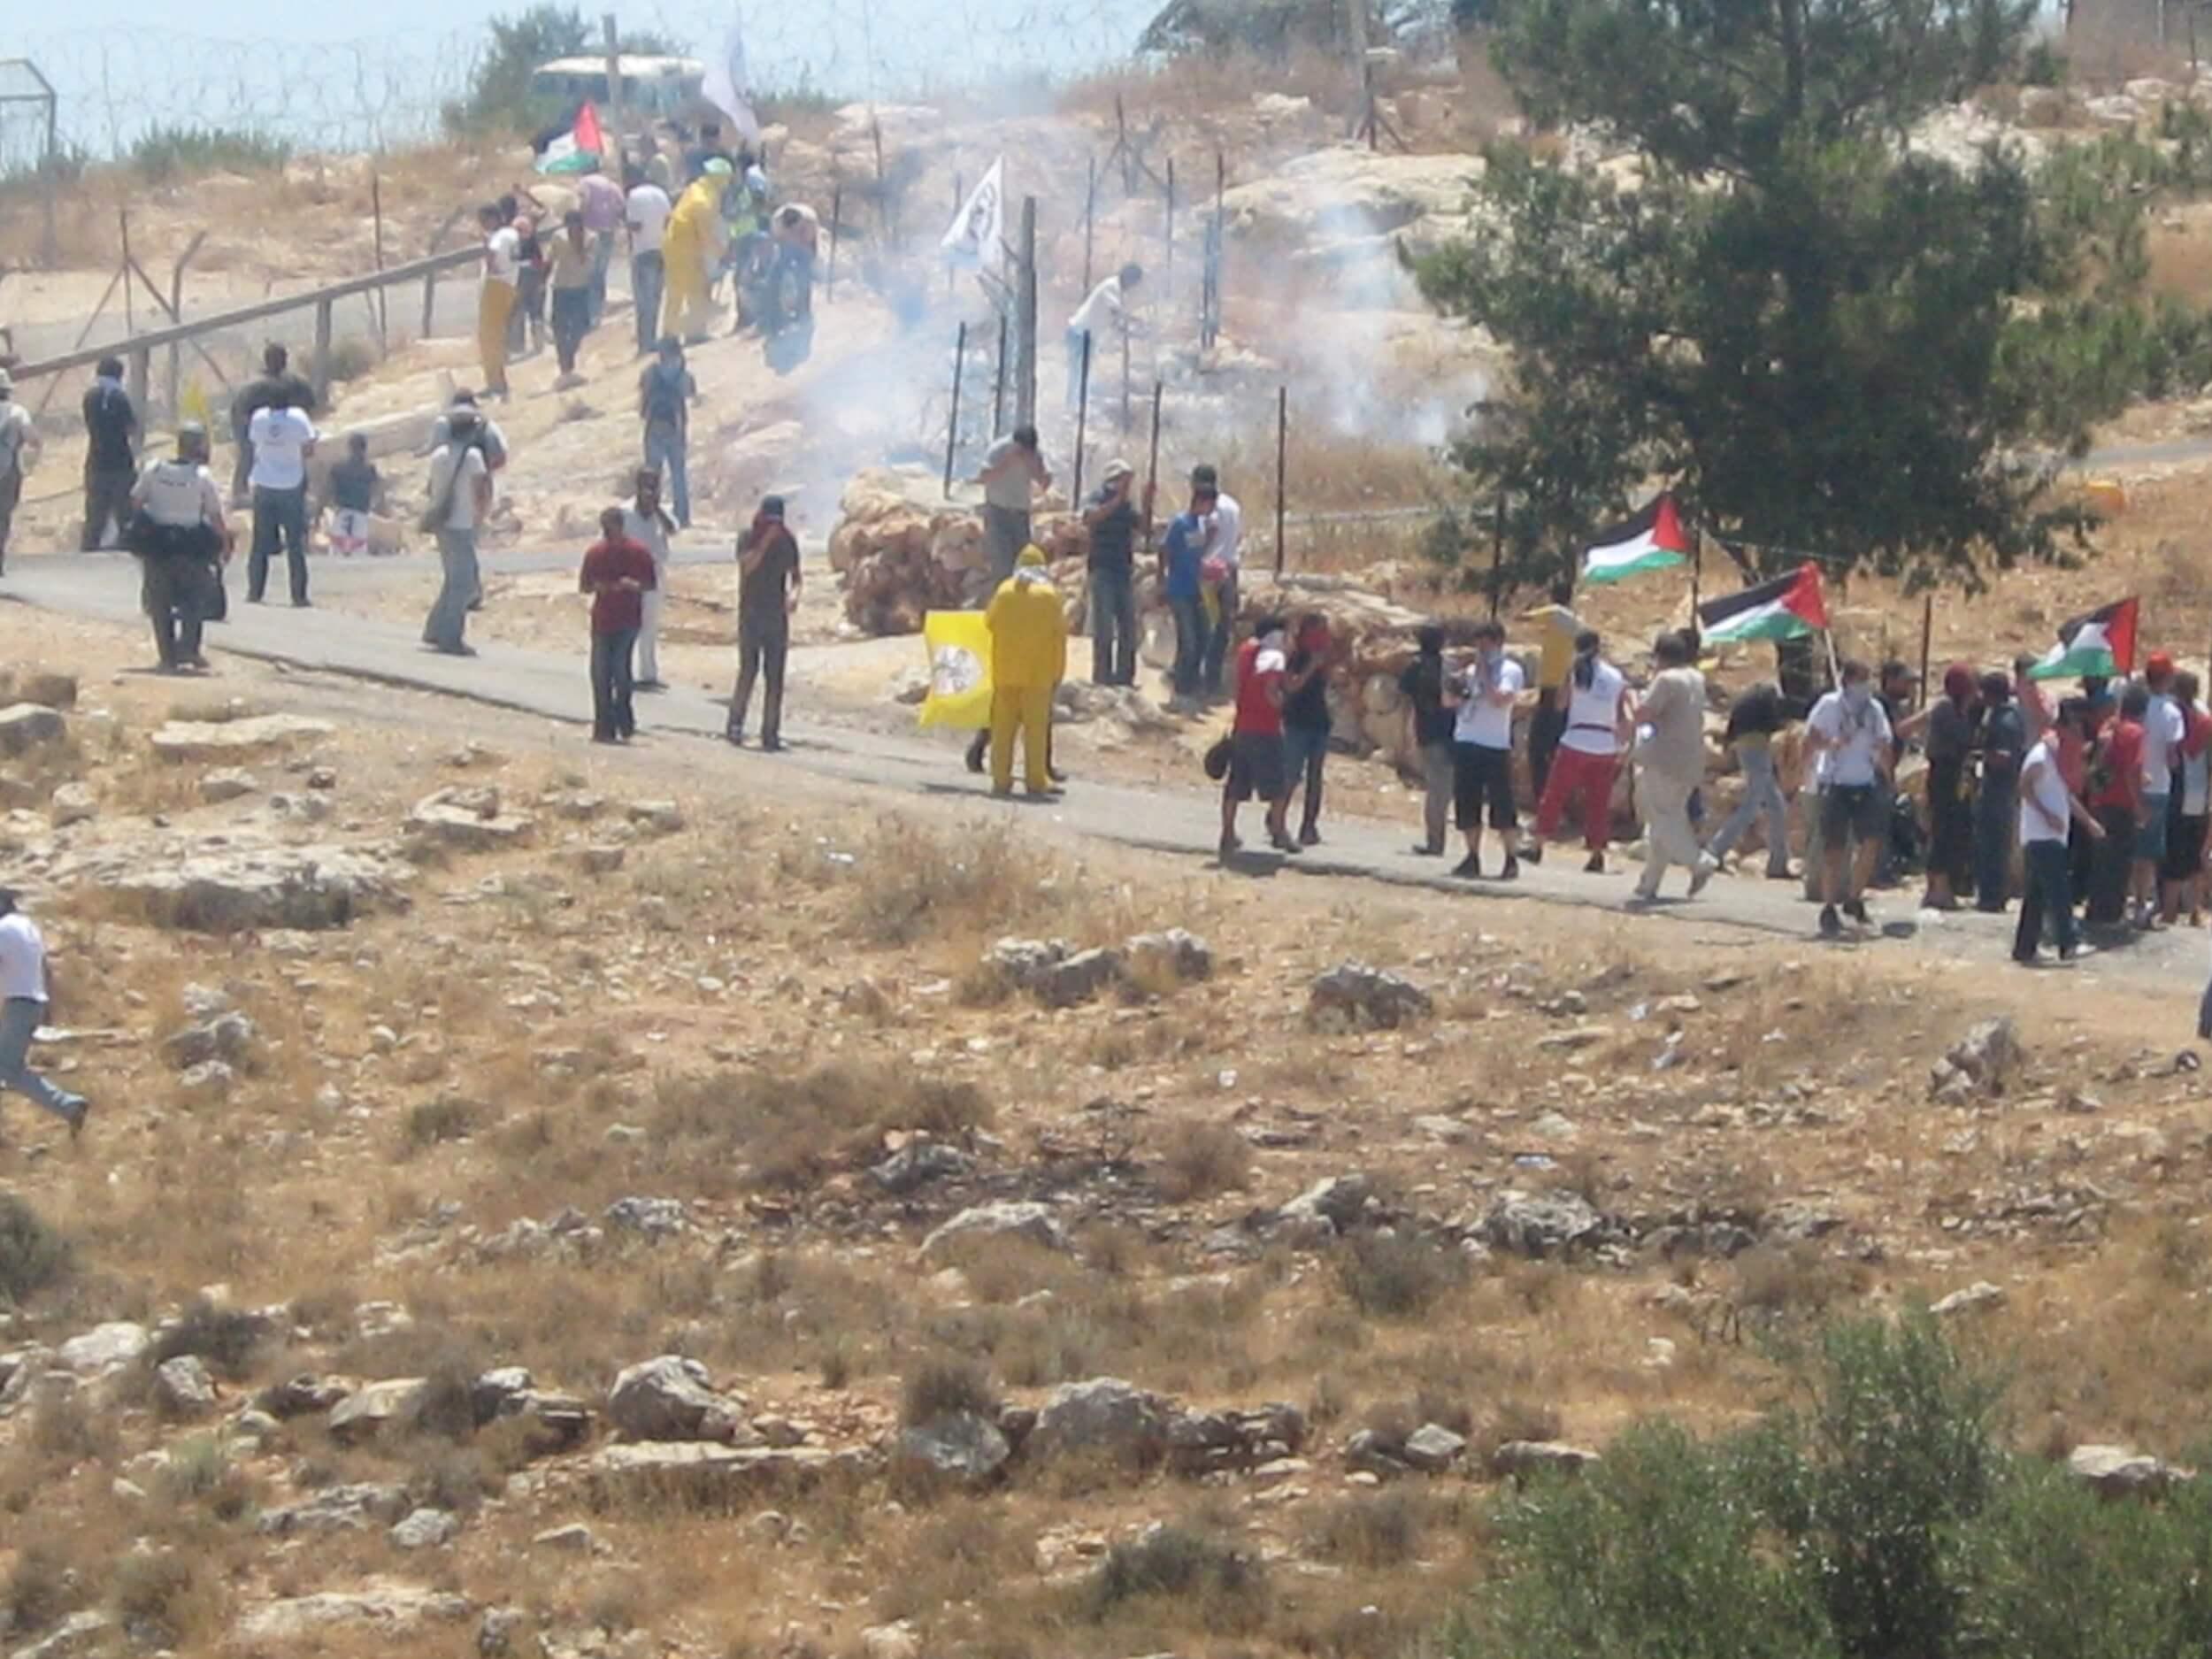 Resistance demonstrations in Bil'lin met with crackdown by Israeli Defense Forces against civilians. (Photo: Harry Gunkel)